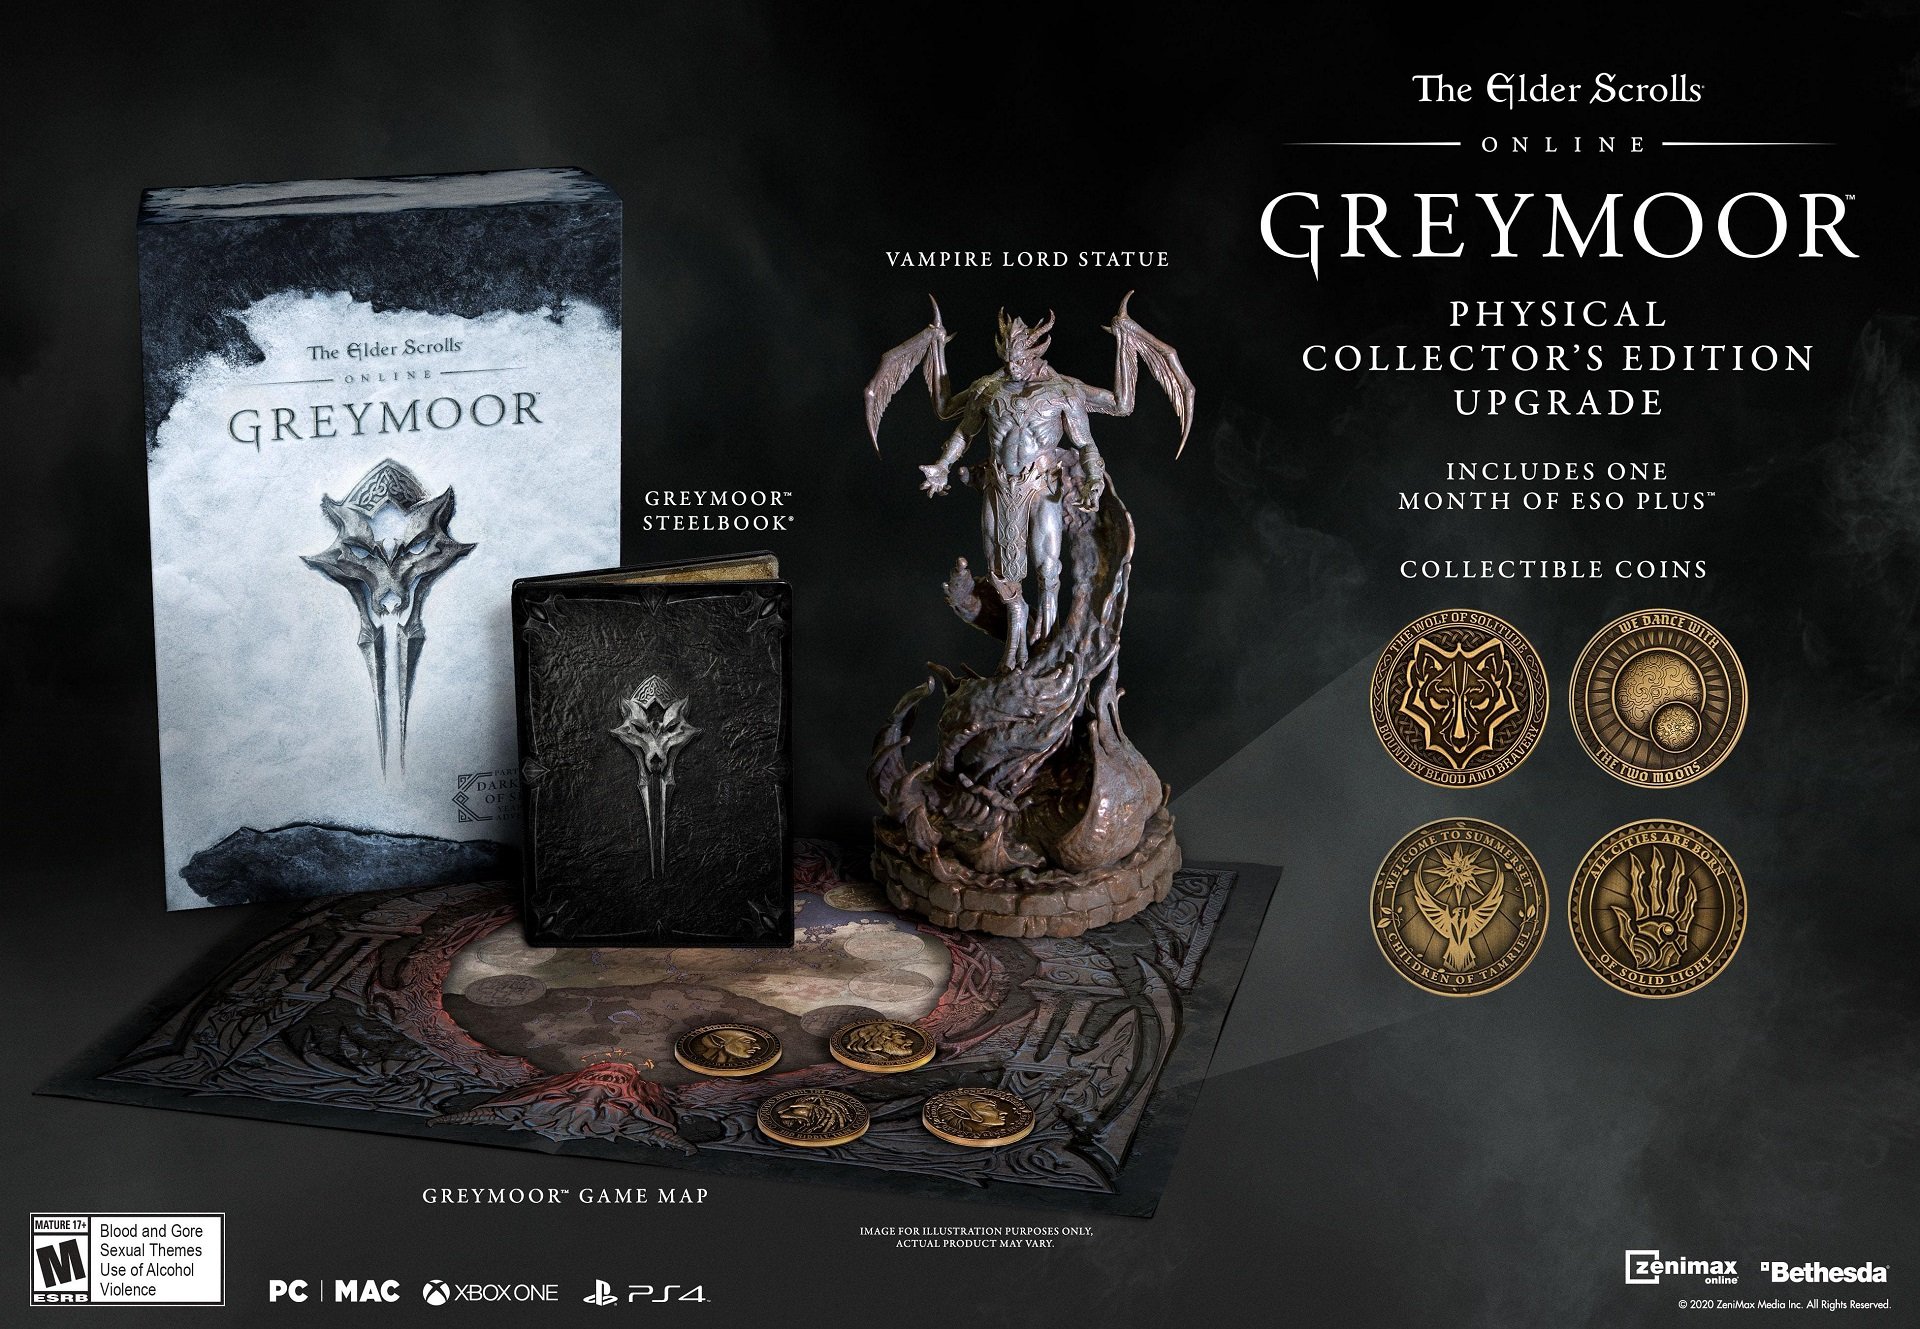 The Elder Scrolls Online Greymoor The Elder Scrolls Online Dark Heart of Skyrim